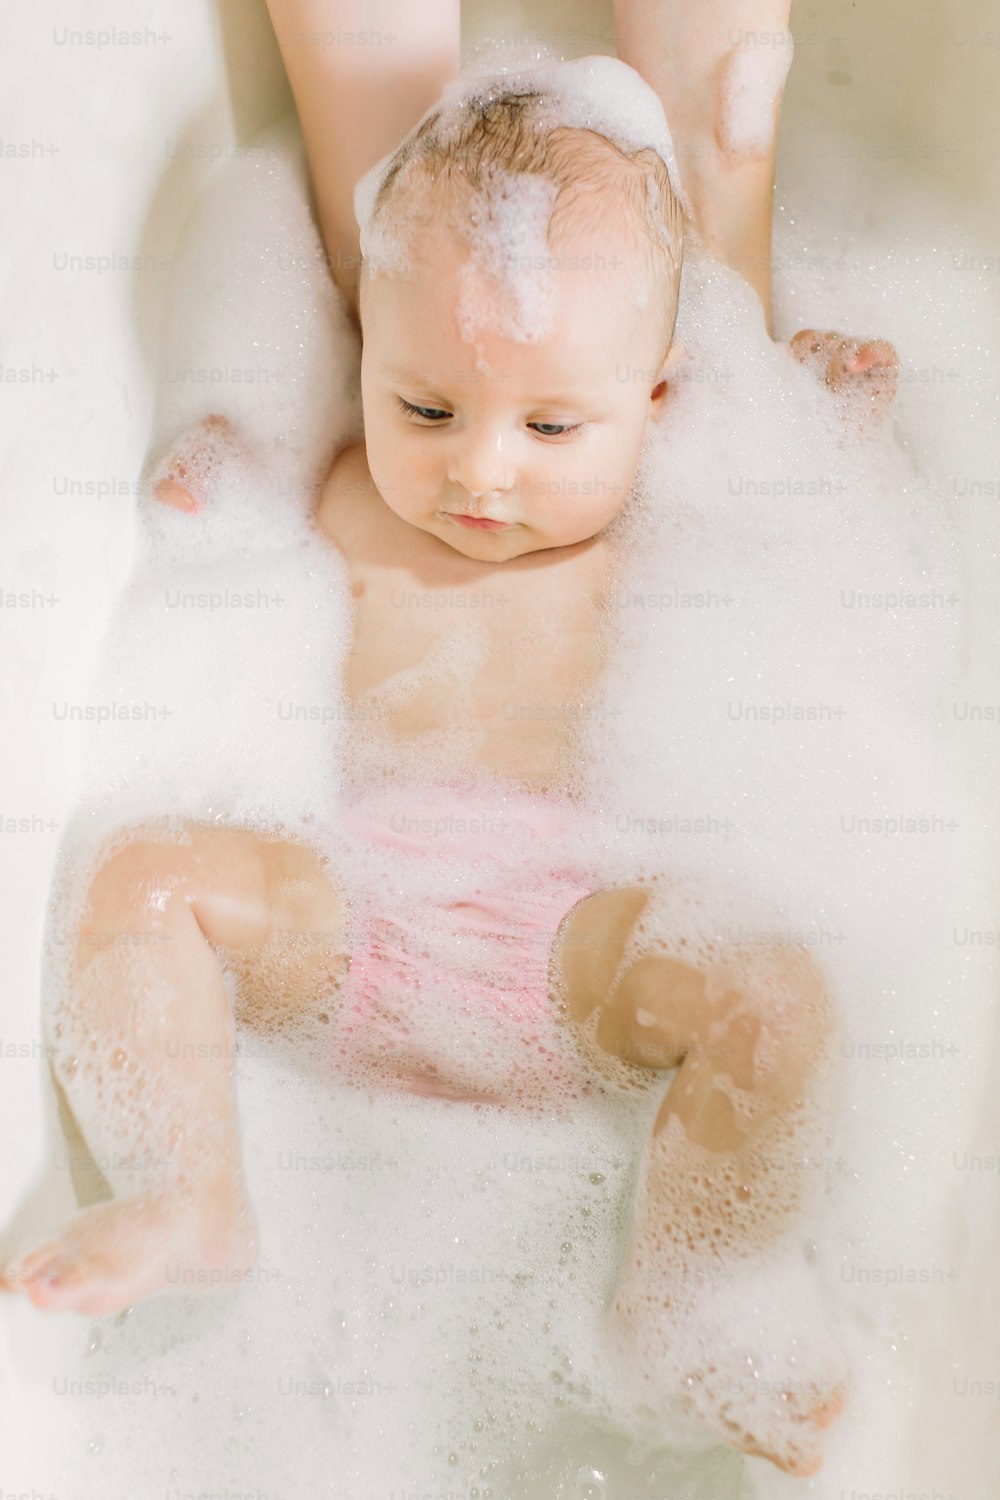 Bebé feliz riendo tomando un baño jugando con burbujas de espuma. Niño pequeño en una bañera. Niño sonriente en el baño con pato de juguete colorido. Lavado y baño de bebés. Higiene y cuidado de los niños pequeños.